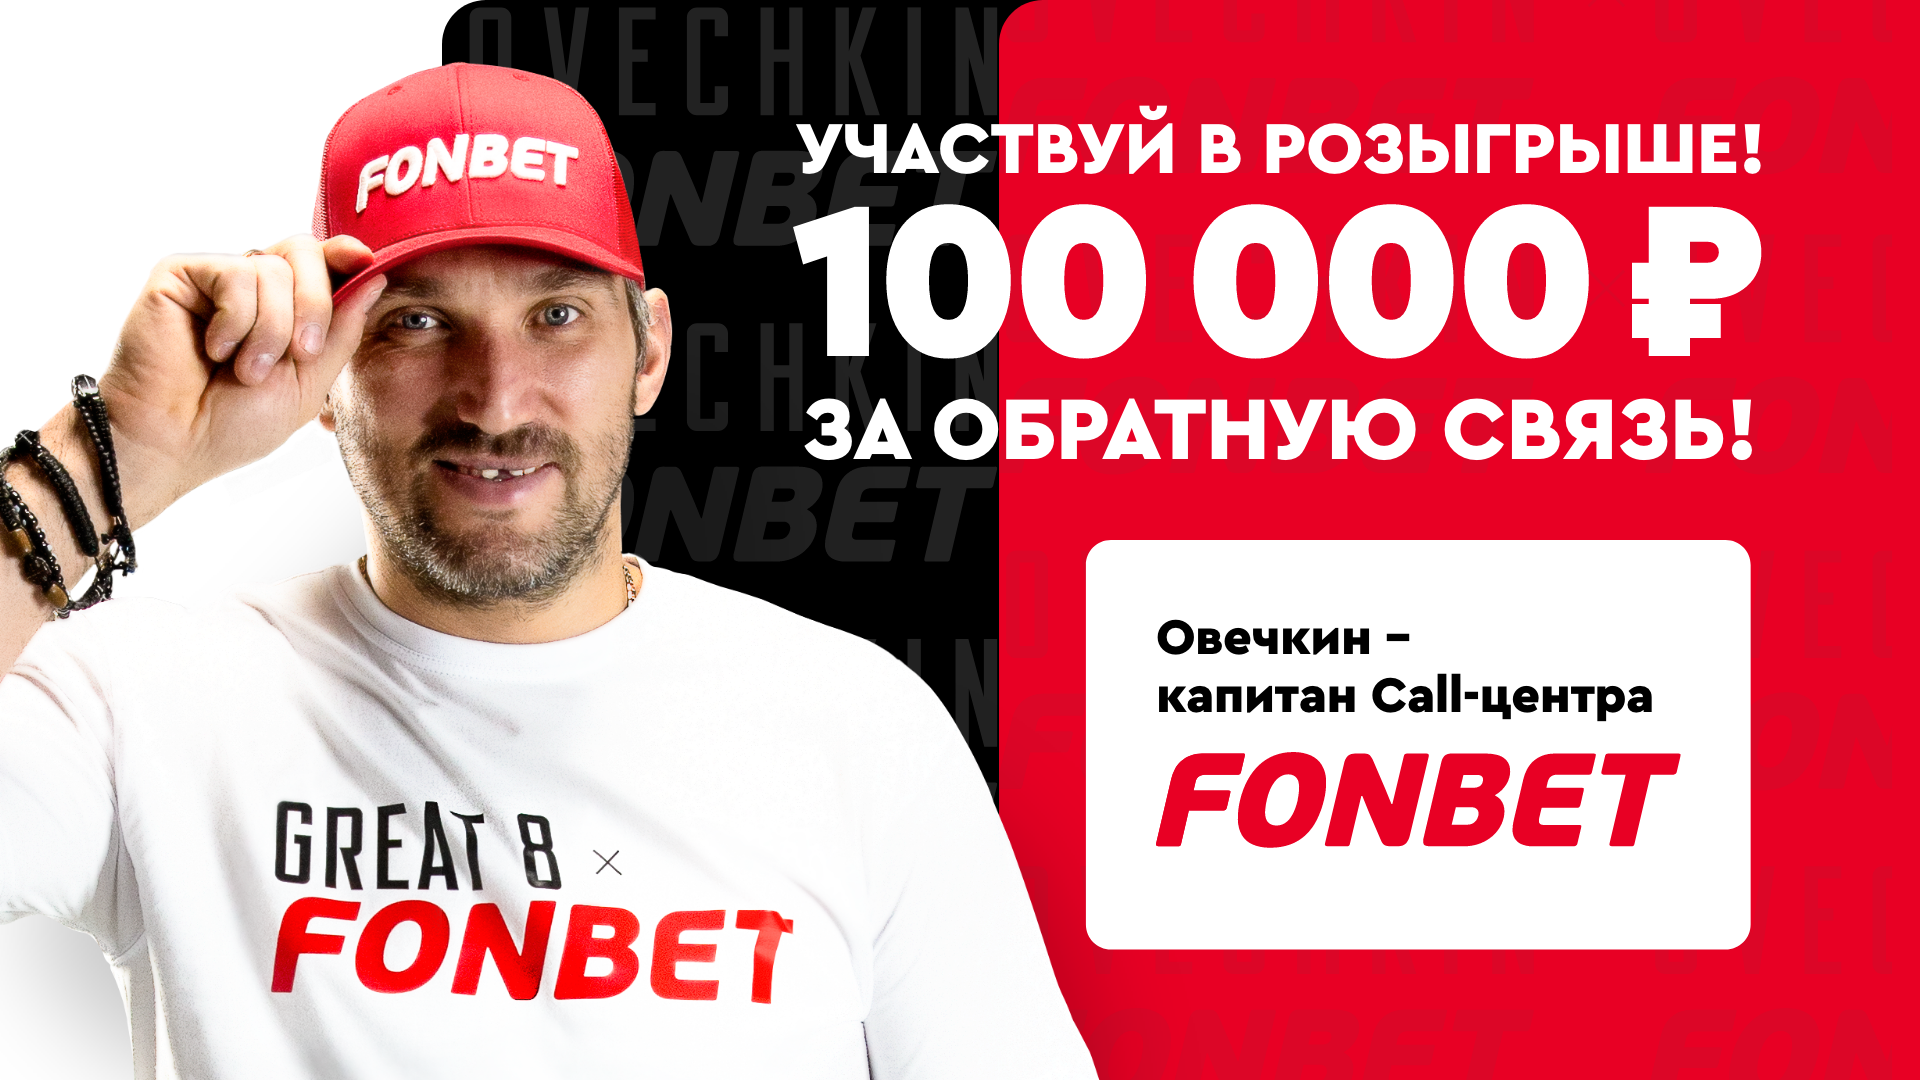 «Фонбет» подарит фрибет до 100000 рублей за обратную связь